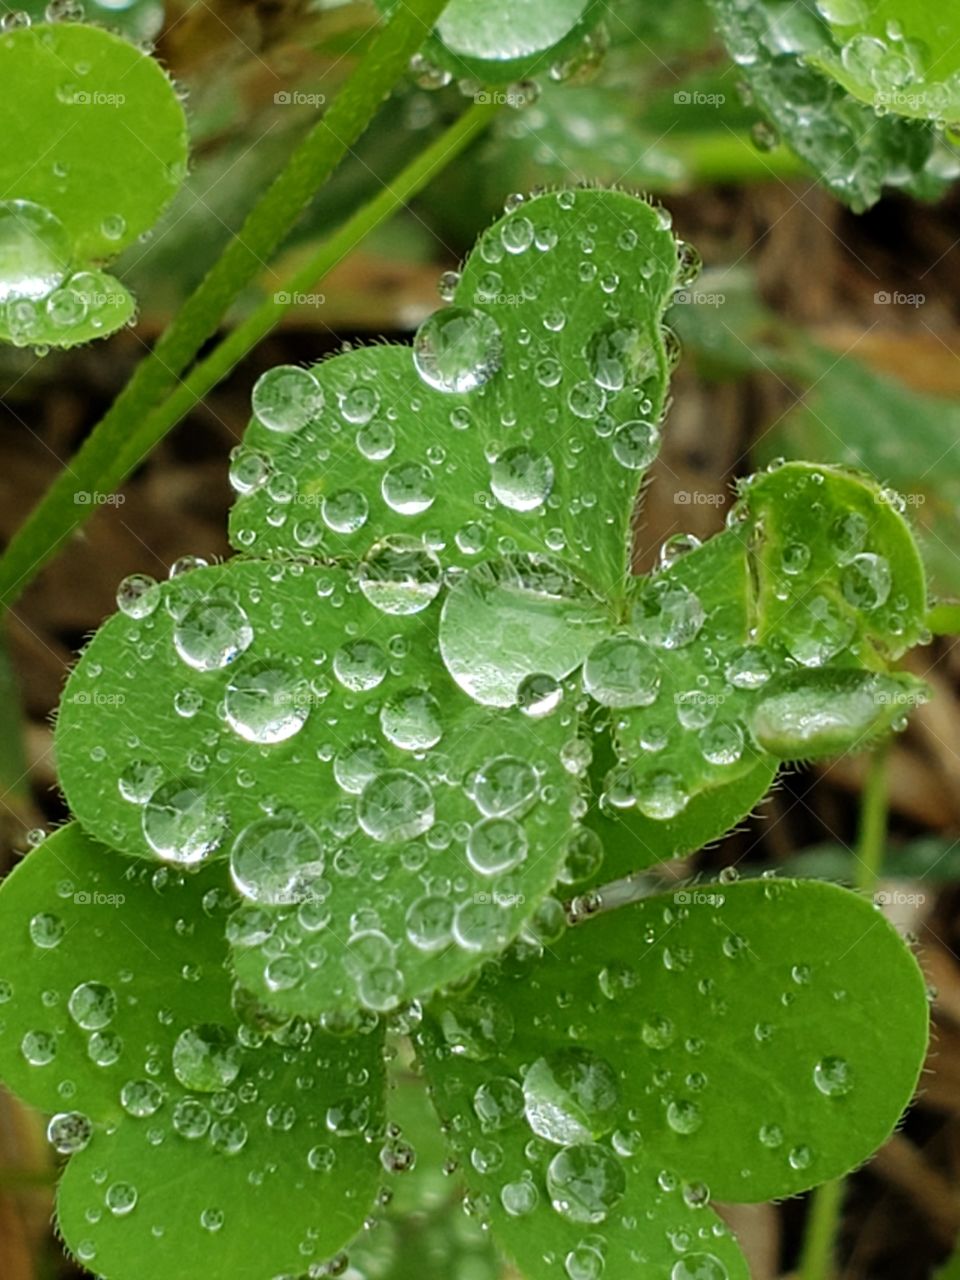 Clover leaf close up